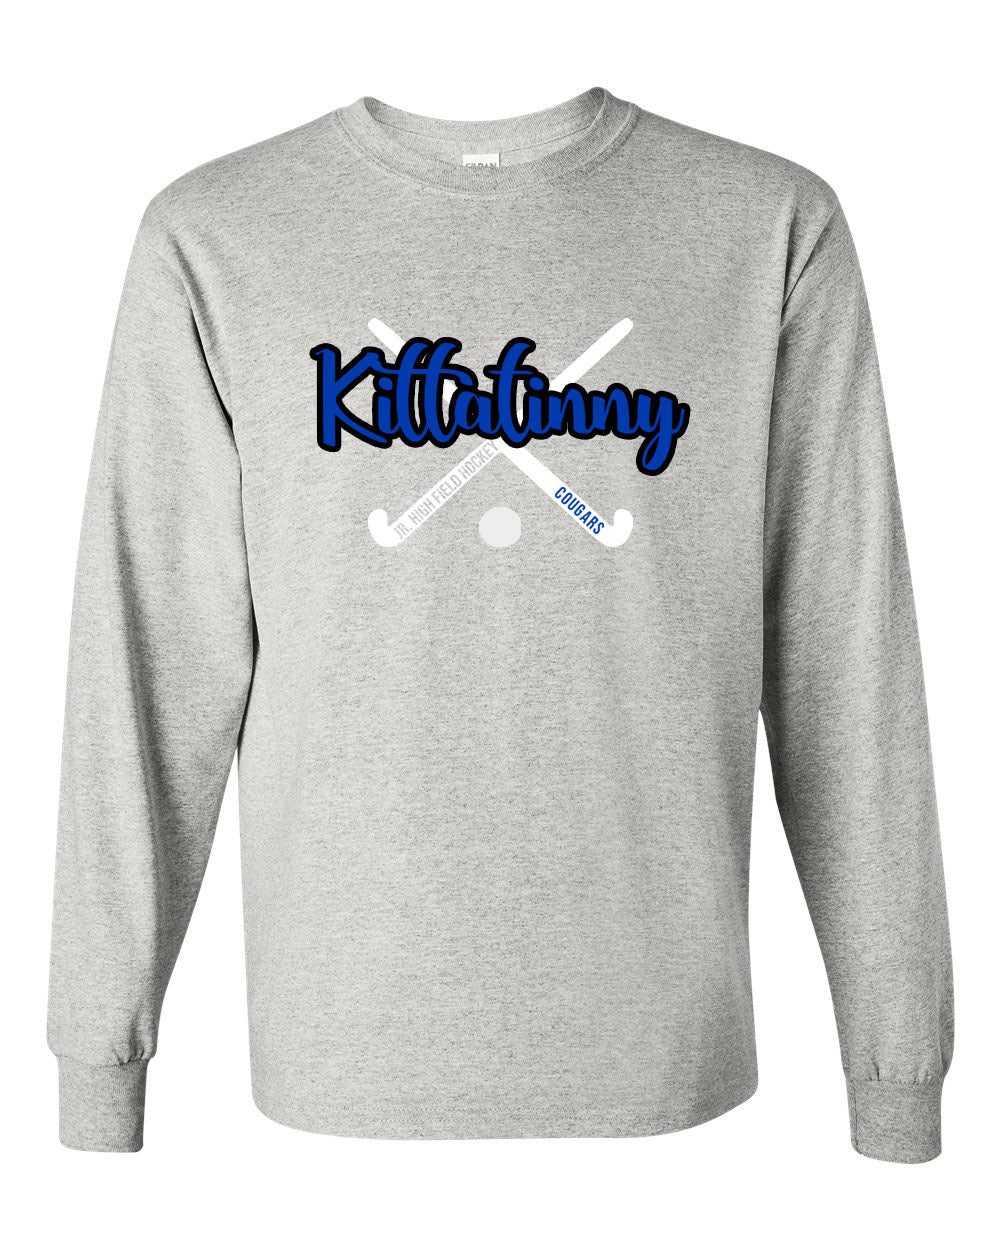 Kittatinny Jr Field Hockey Design 2 Long Sleeve Shirt